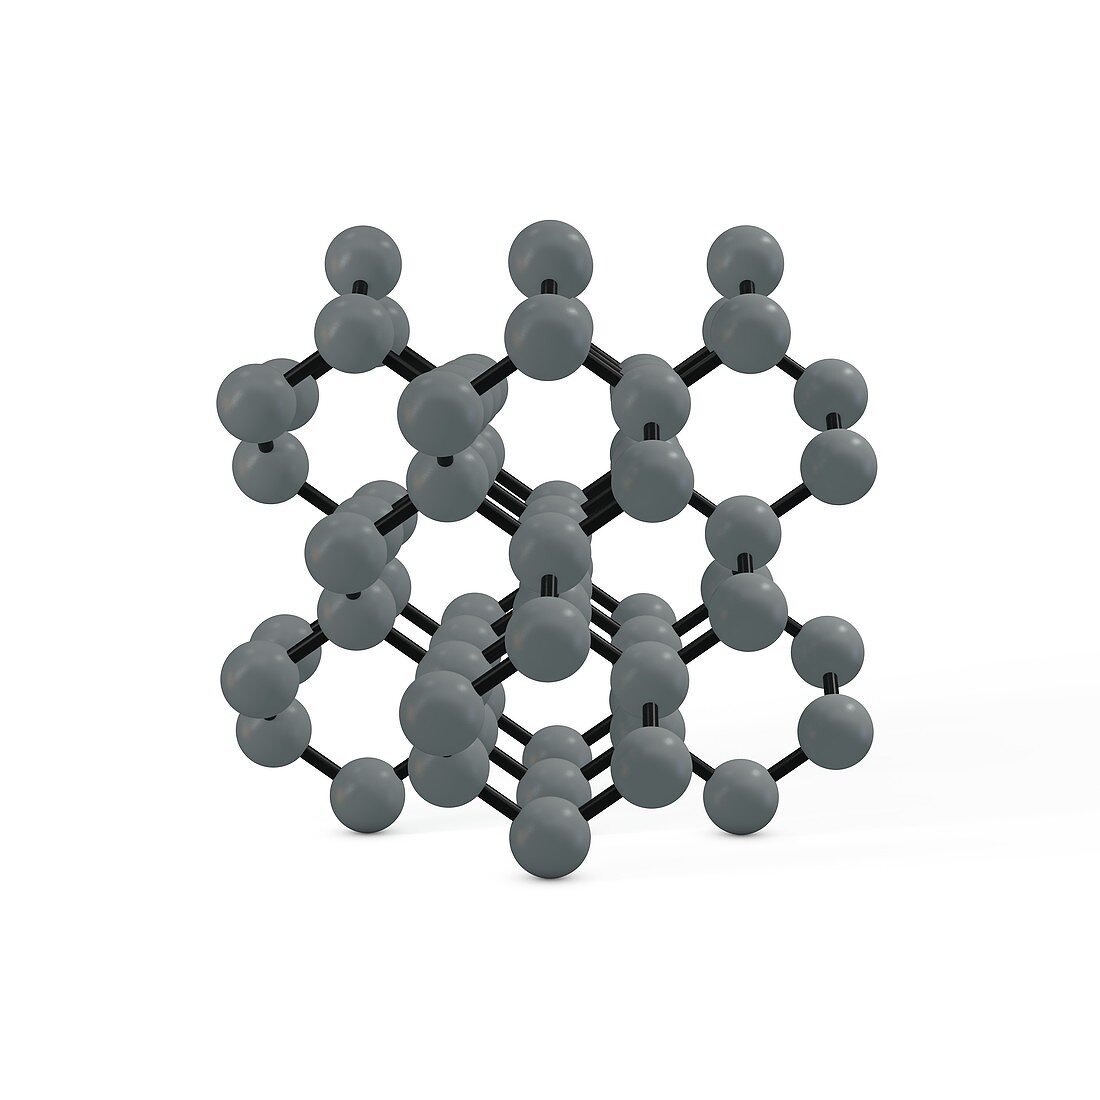 Diamond molecule, illustration